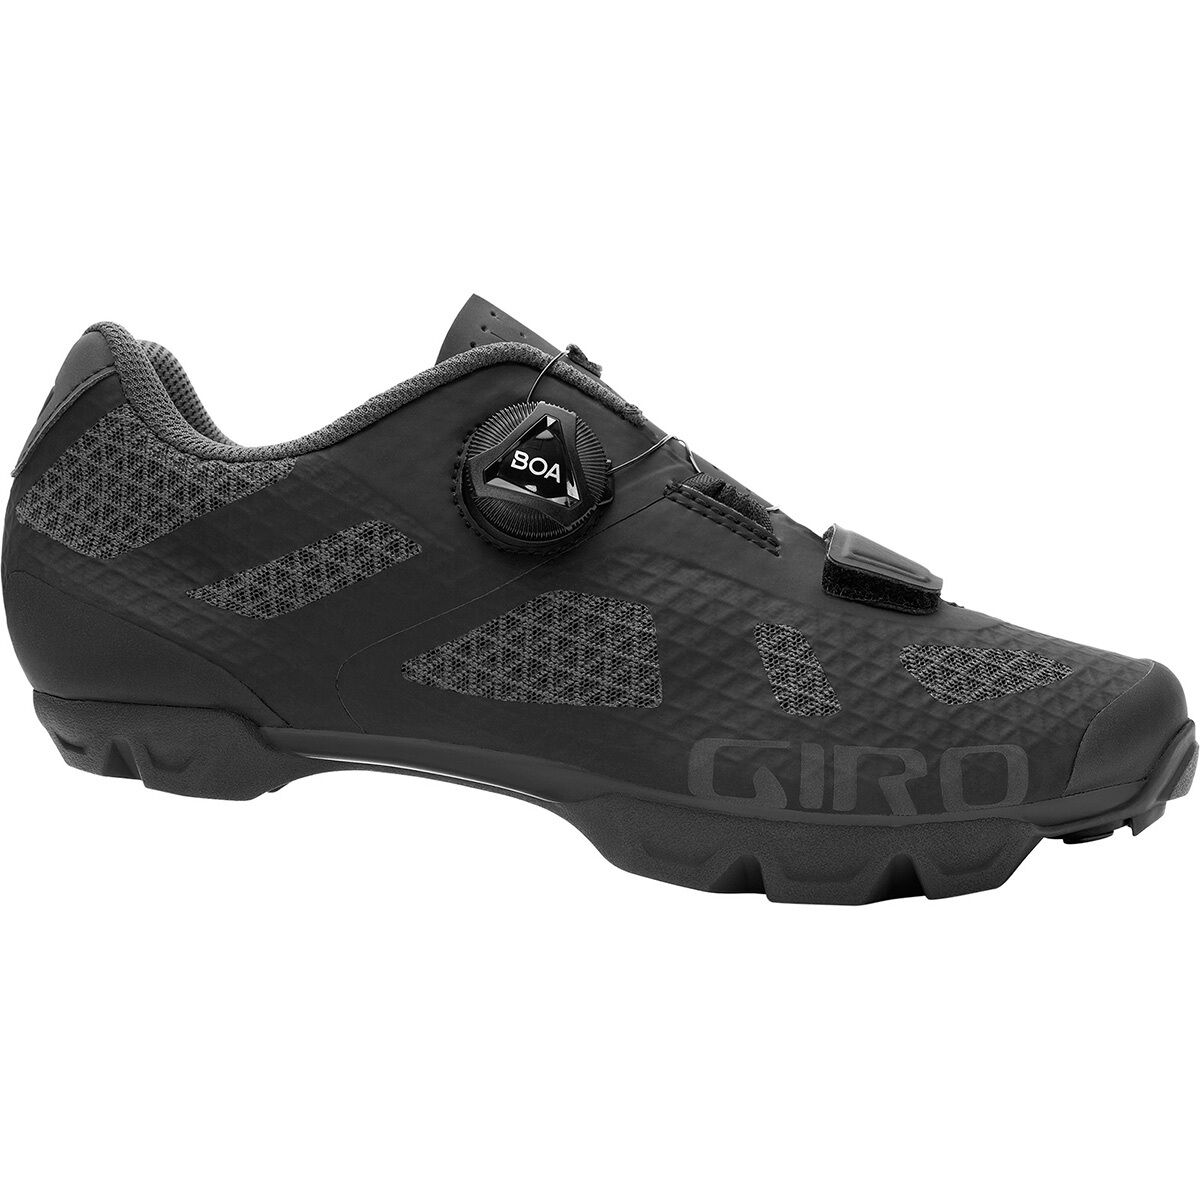 Giro Rincon Cycling Shoe - Women's